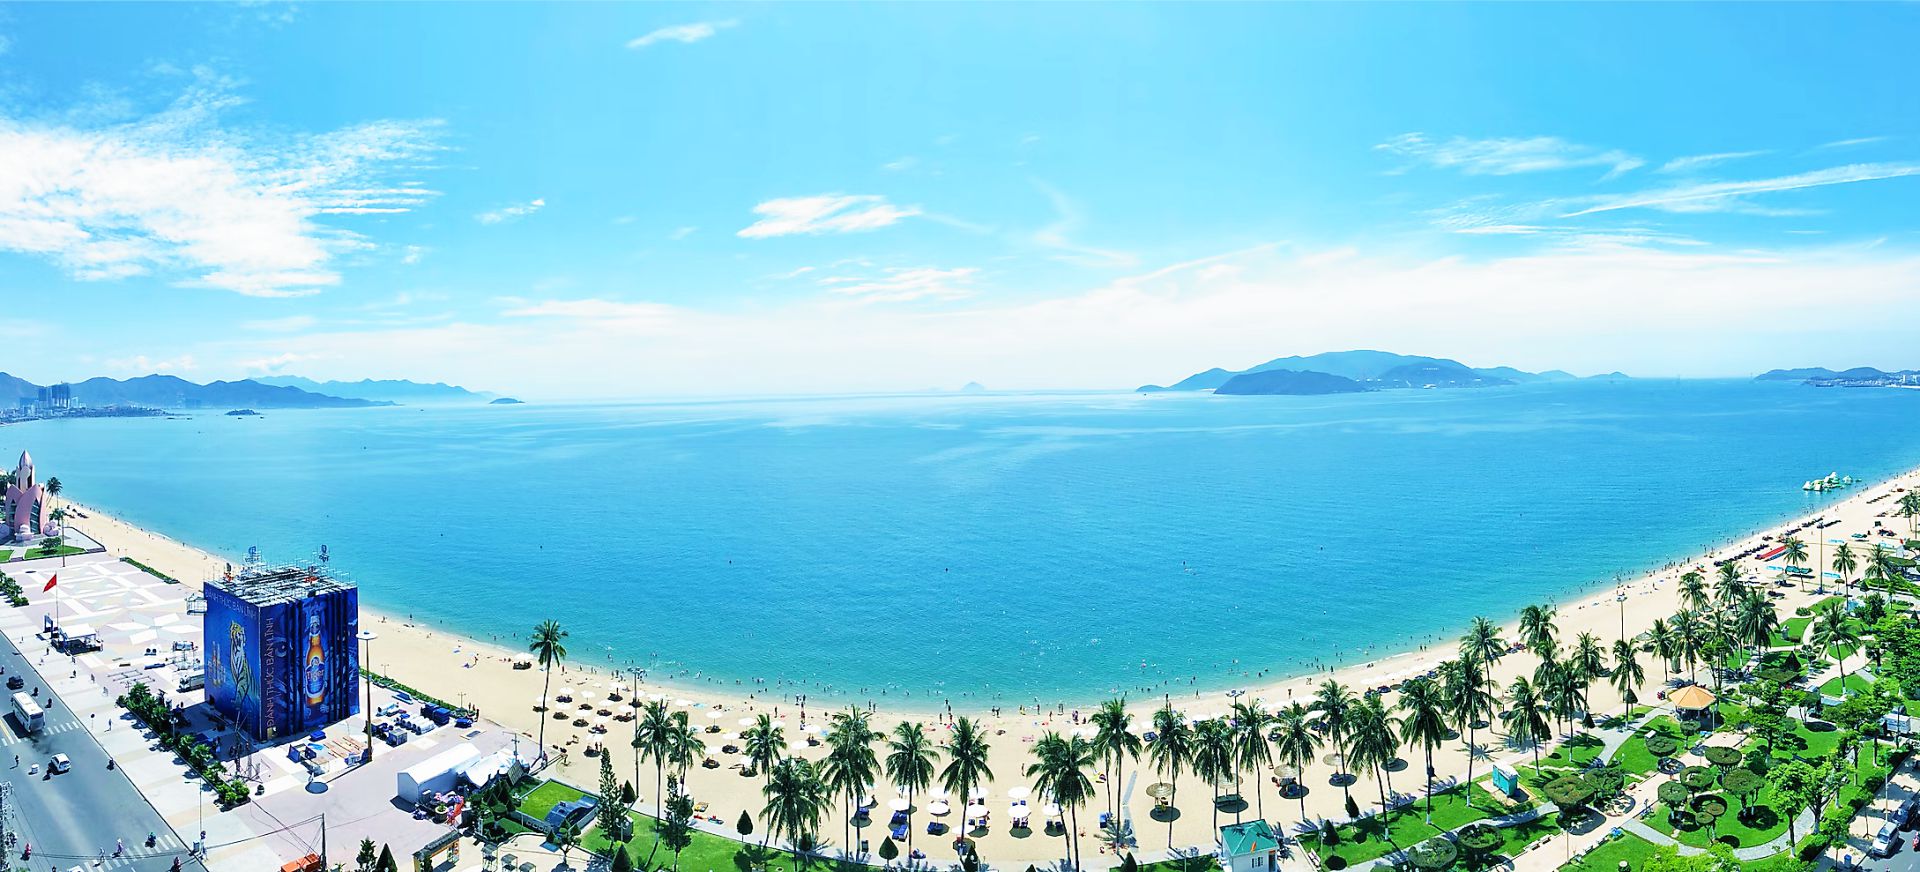 Việt Nam sở hữu 2 trong số 5 bãi biển đẹp nhất thế giới, thu hút triệu lượt xem trên TikTok  - Ảnh 6.